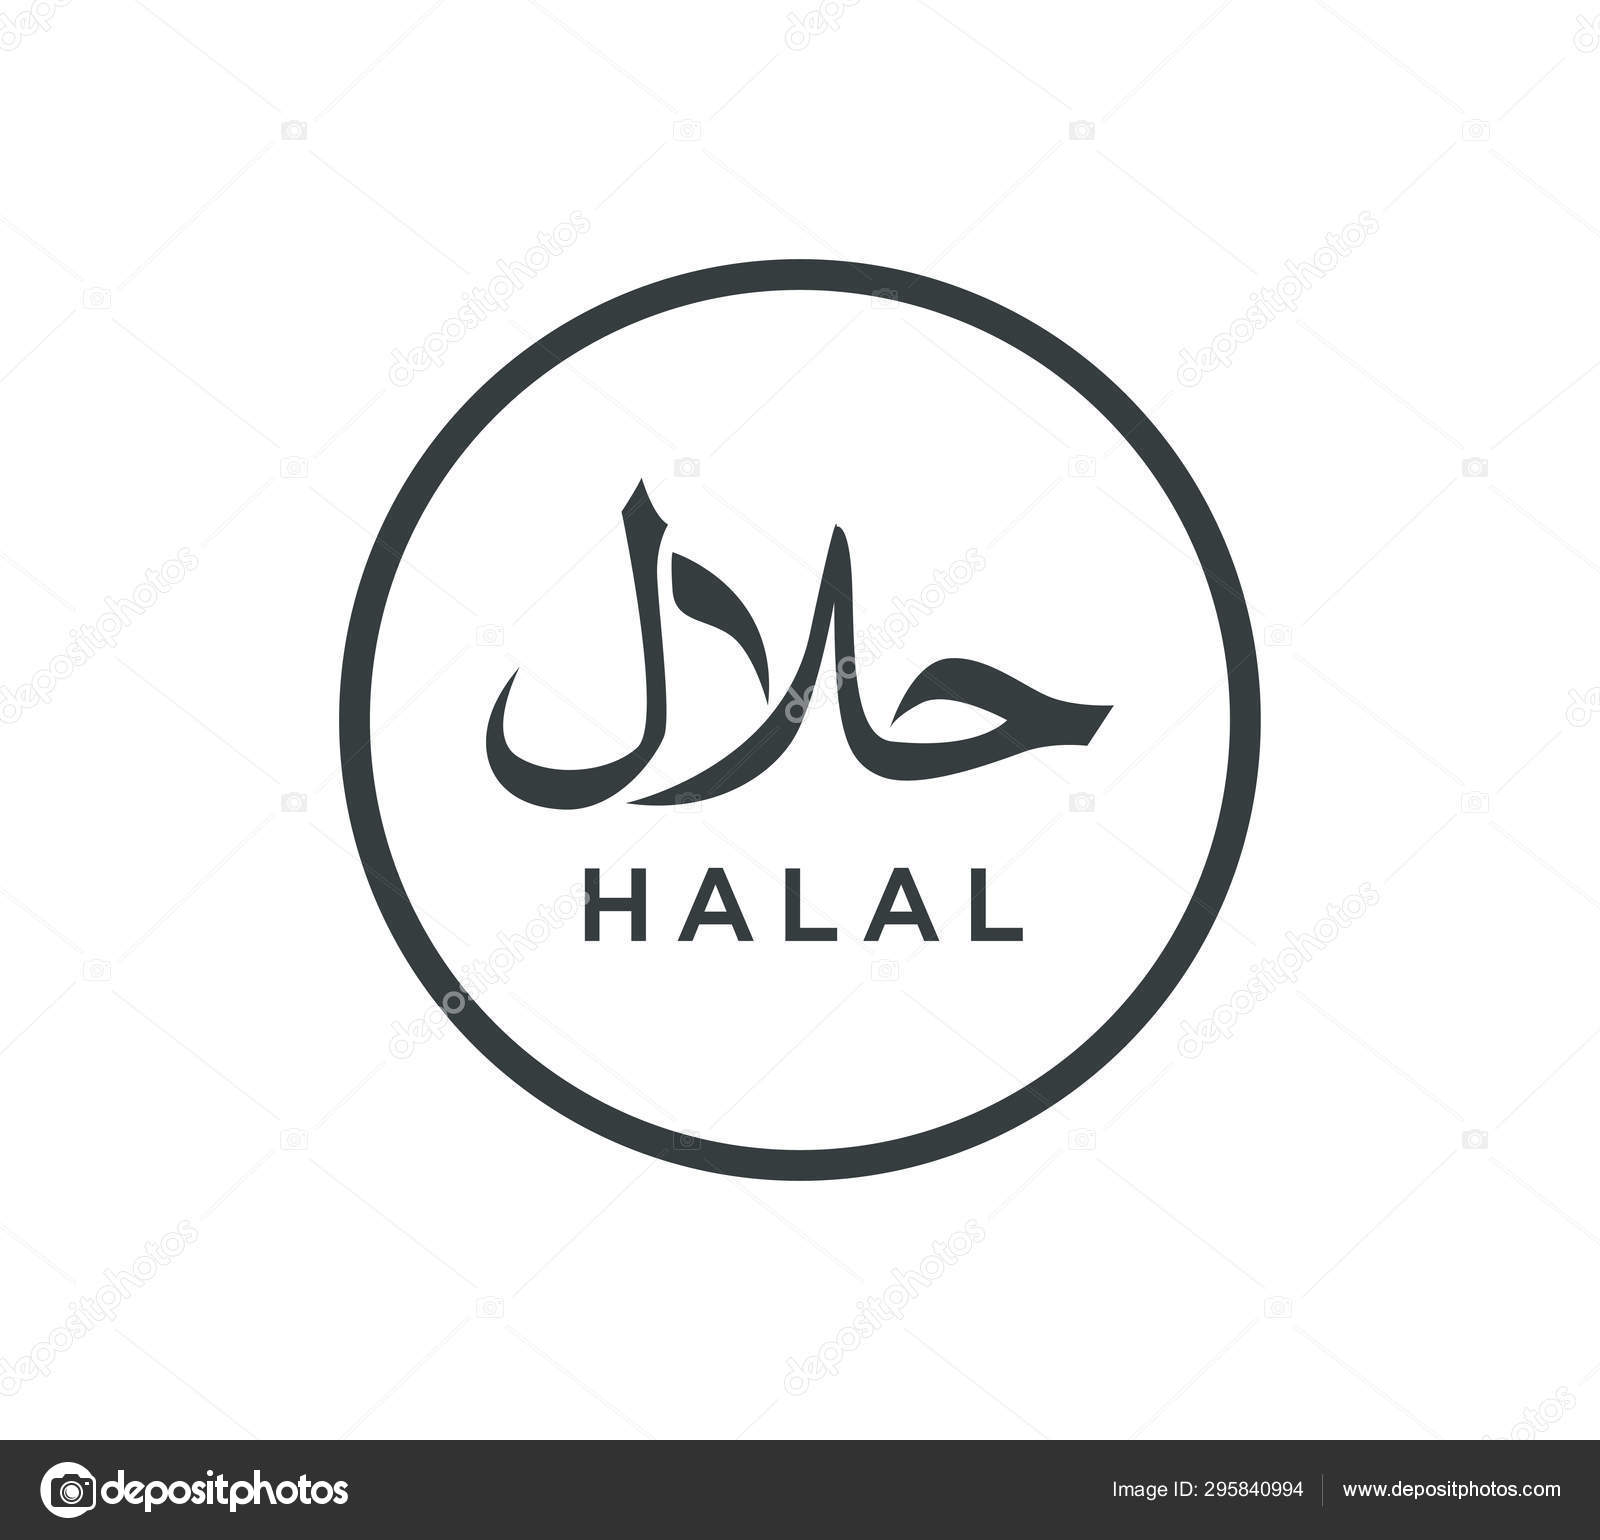 Millenial Harus Gaungkan Halal Sebagai Lifestyle